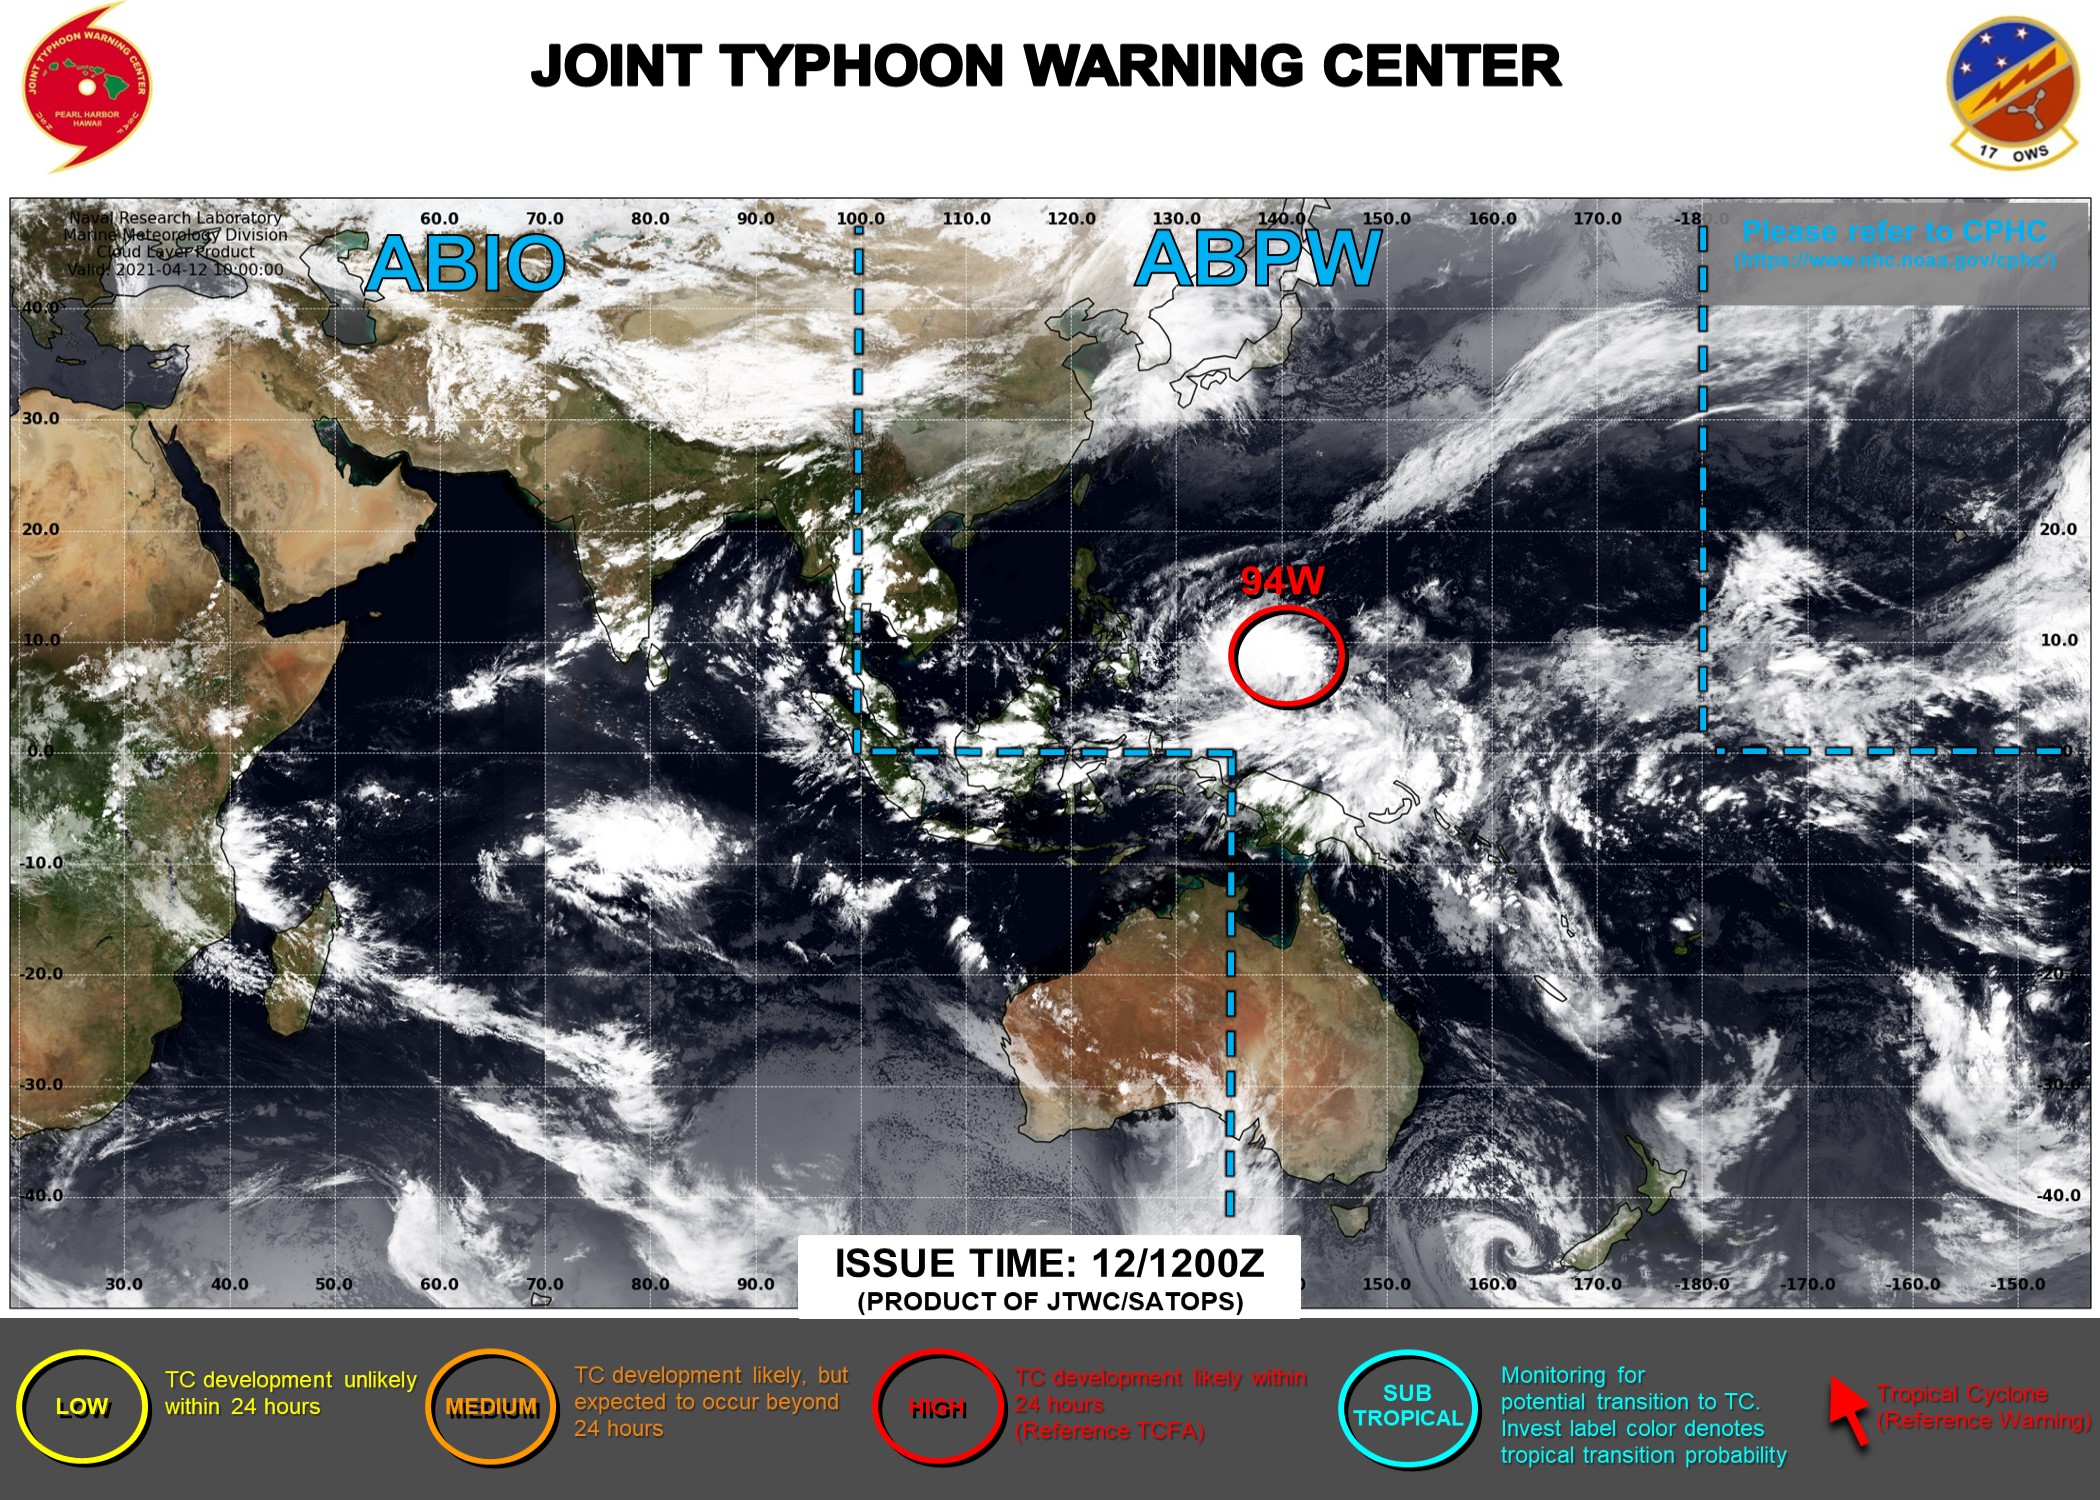 台風2号21たまご最新進路予想 米軍 ヨーロッパ予報は来週に日本列島接近か 知っとく 防災のすべて